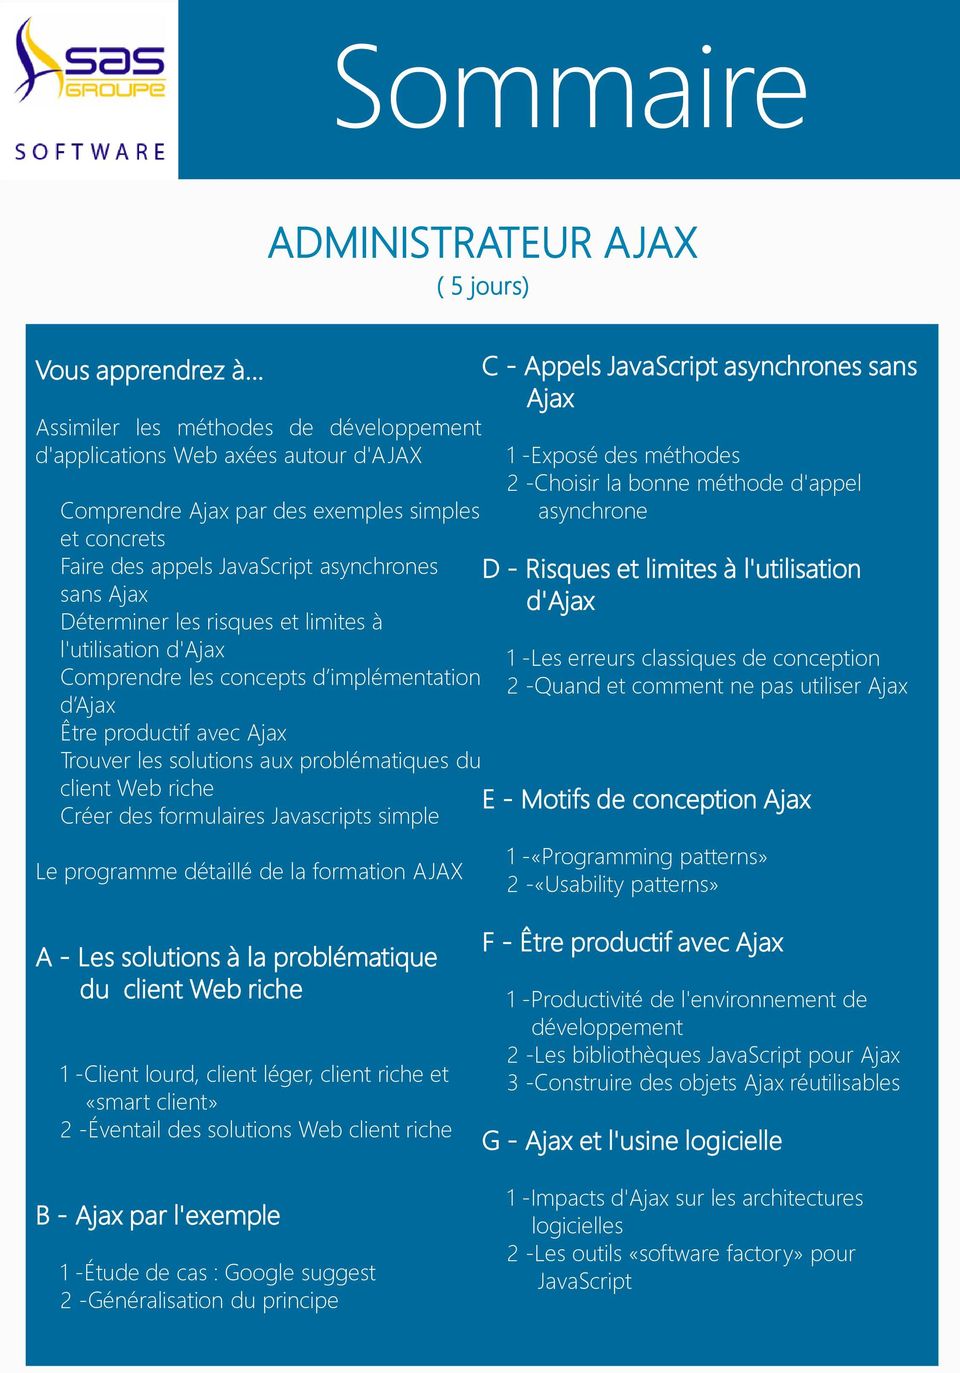 risques et limites à l'utilisation d'ajax Comprendre les concepts d implémentation d Ajax Être productif avec Ajax Trouver les solutions aux problématiques du client Web riche Créer des formulaires